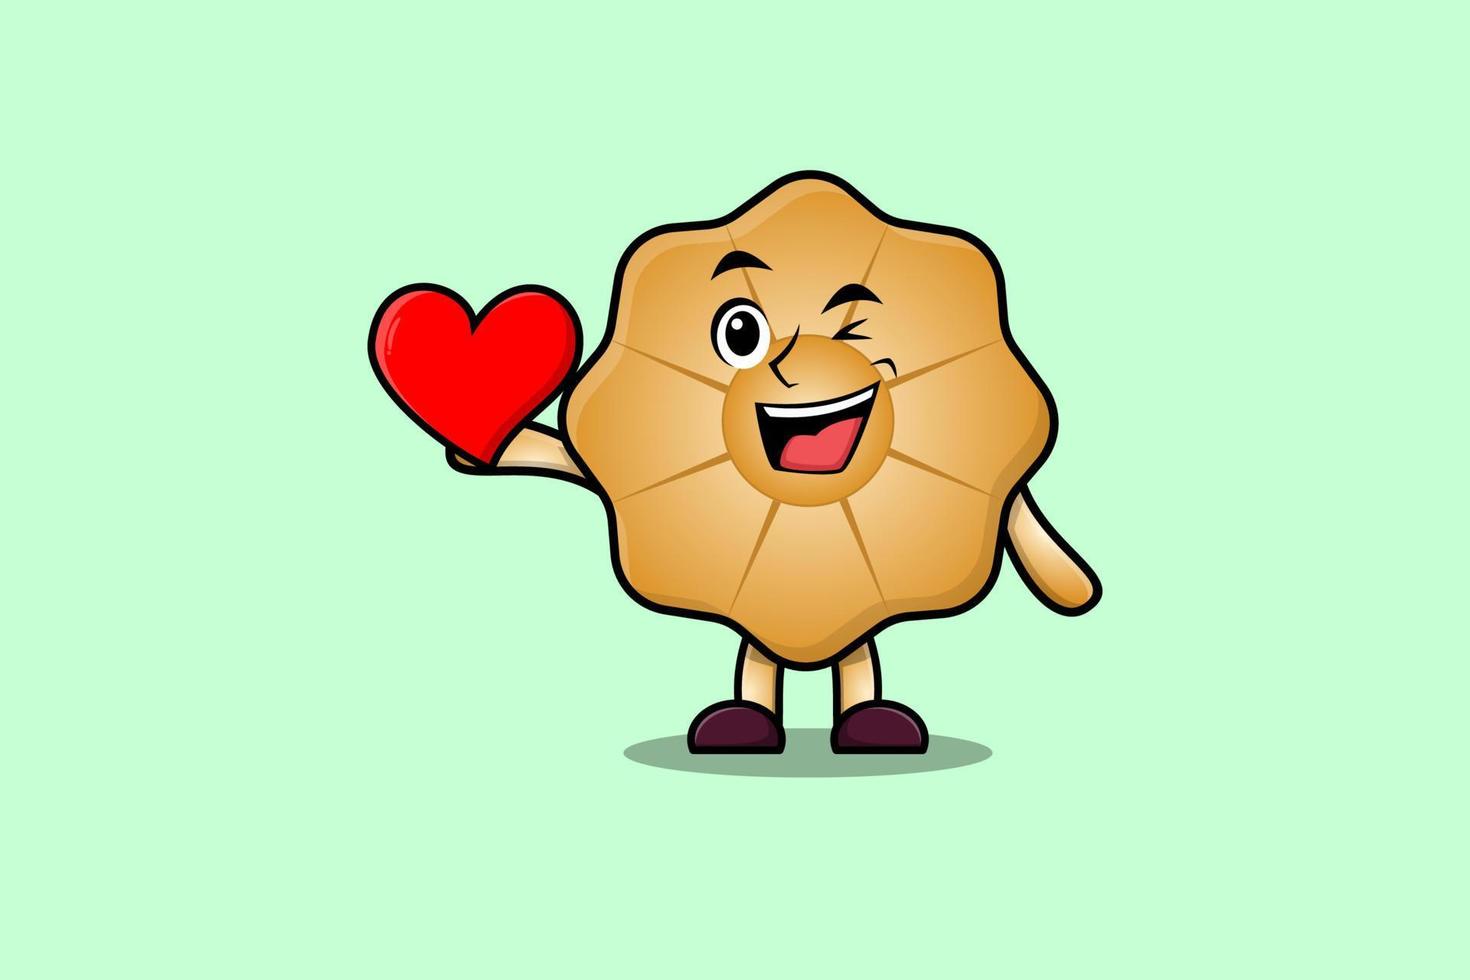 personagem de biscoitos de desenho animado fofo segura um grande coração vermelho vetor